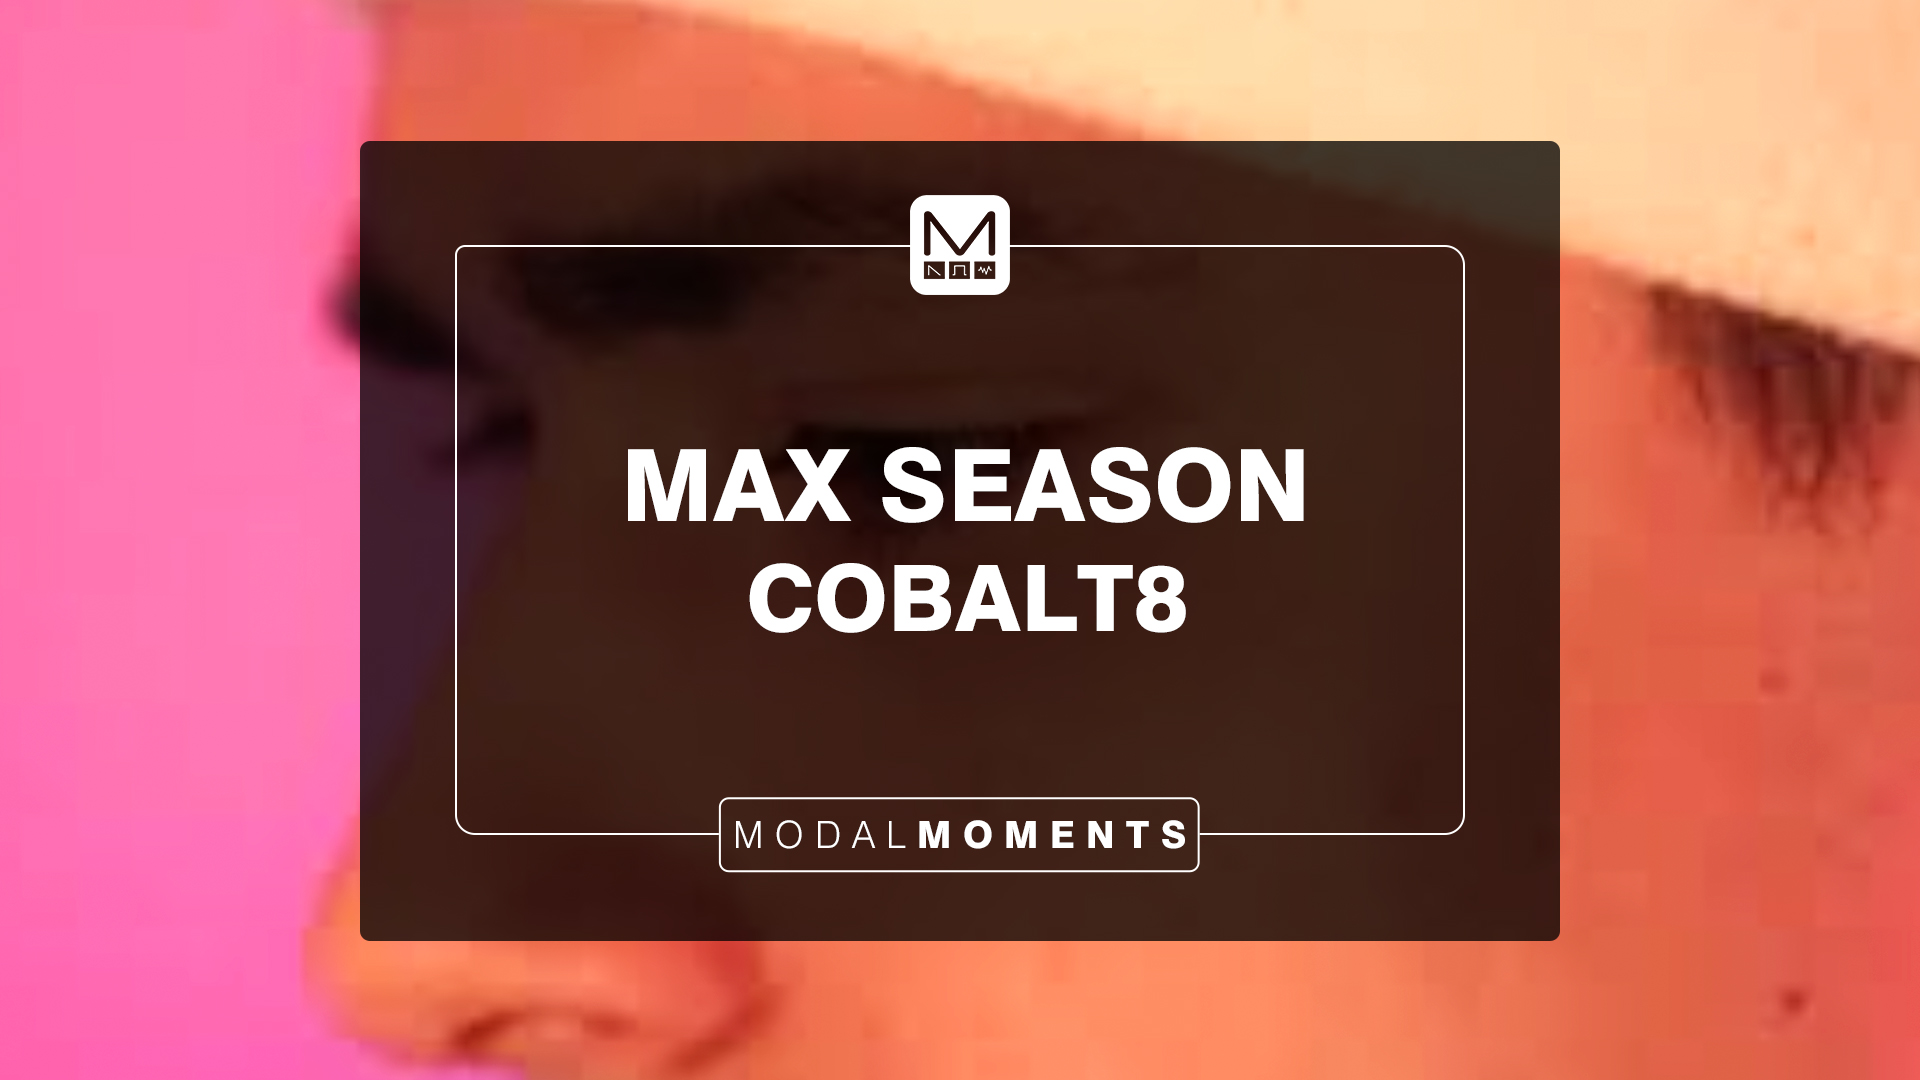 Max Season on COBALT8